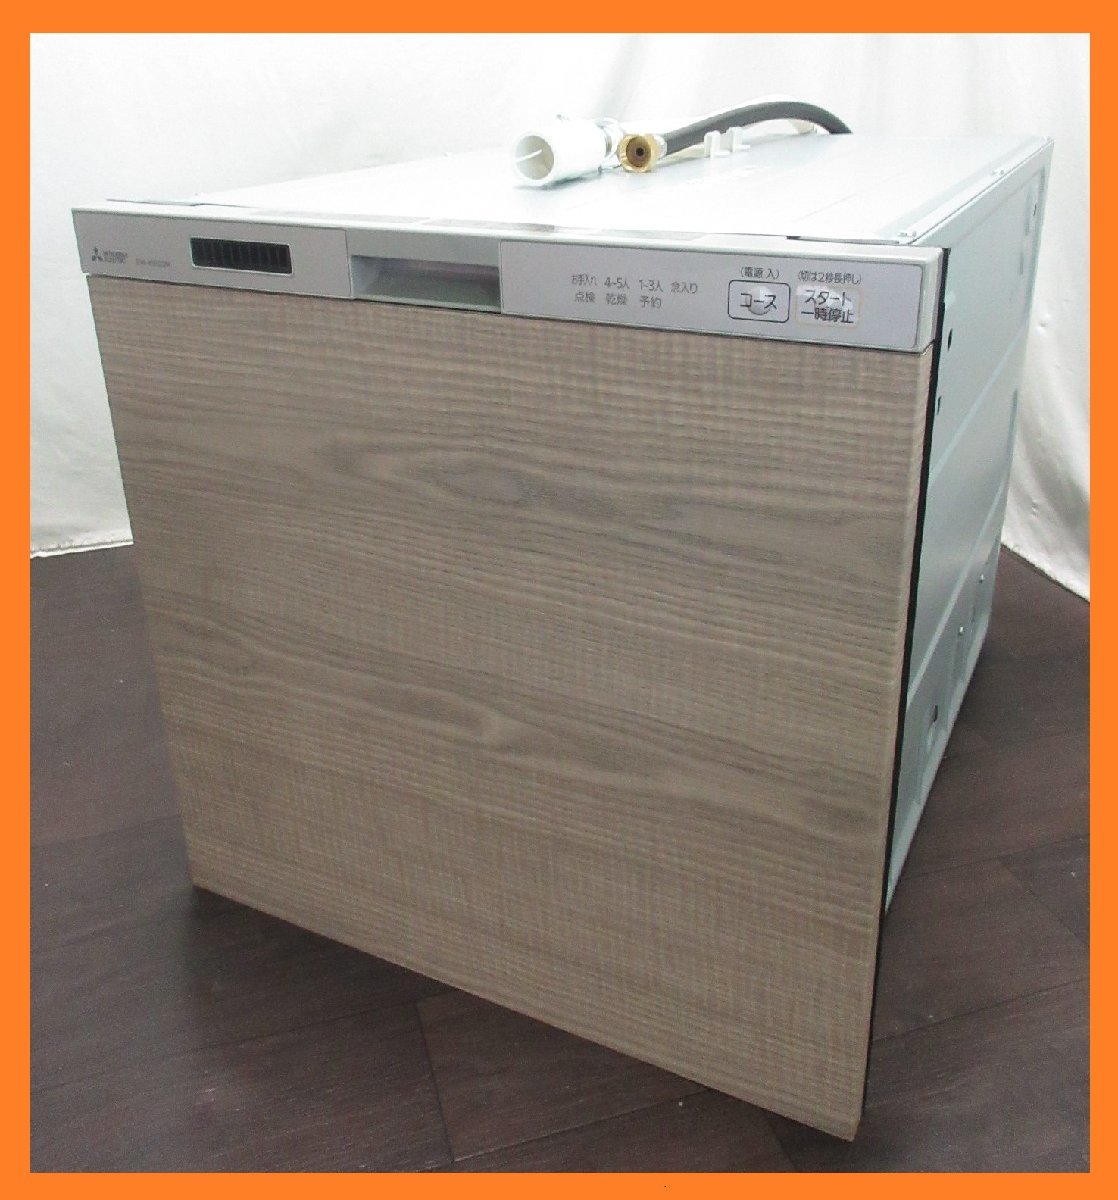 するため 新品:ビルトイン EW-45R2 食洗機 K405v-m67334432077 食器洗